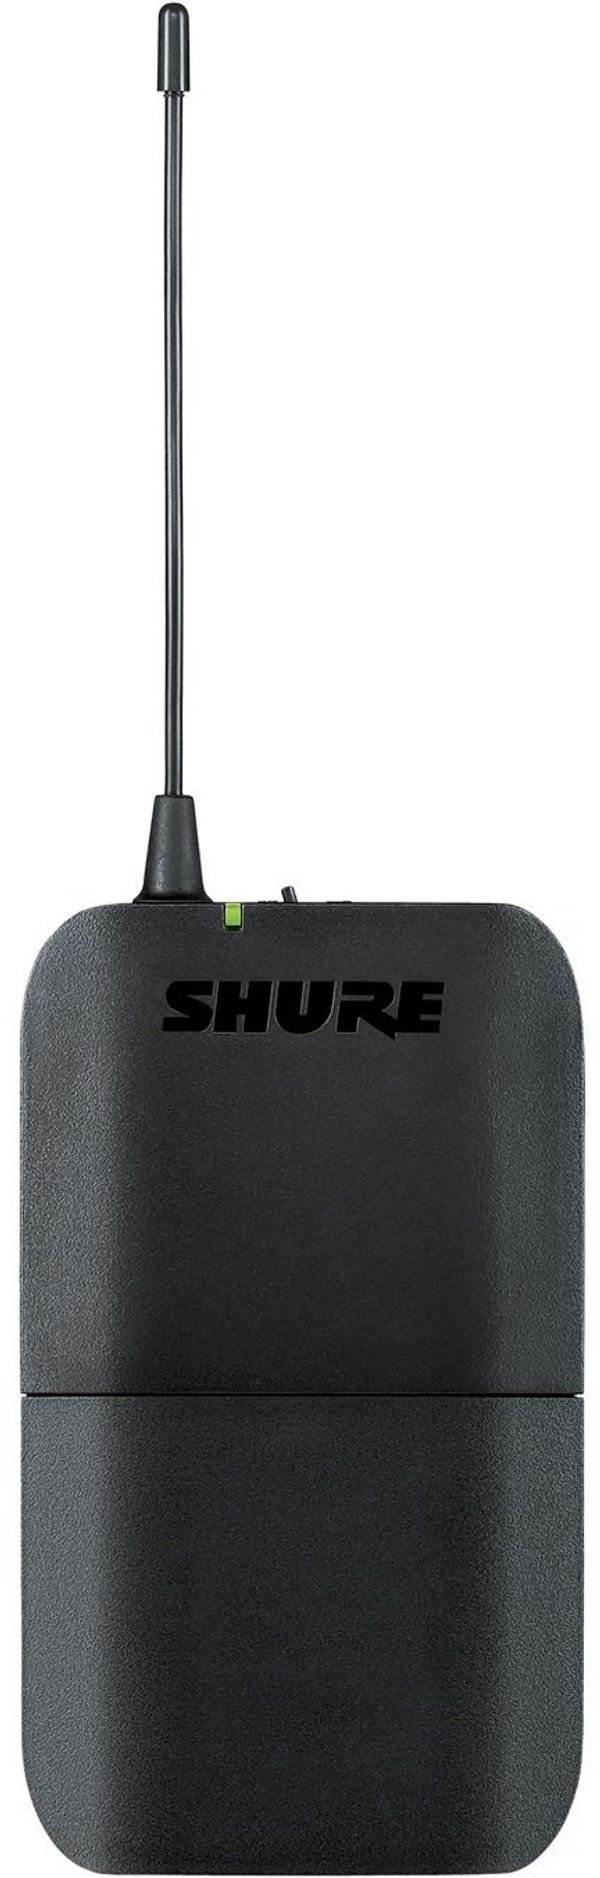 Shure Shure BLX1 H8E: 518-542 MHz